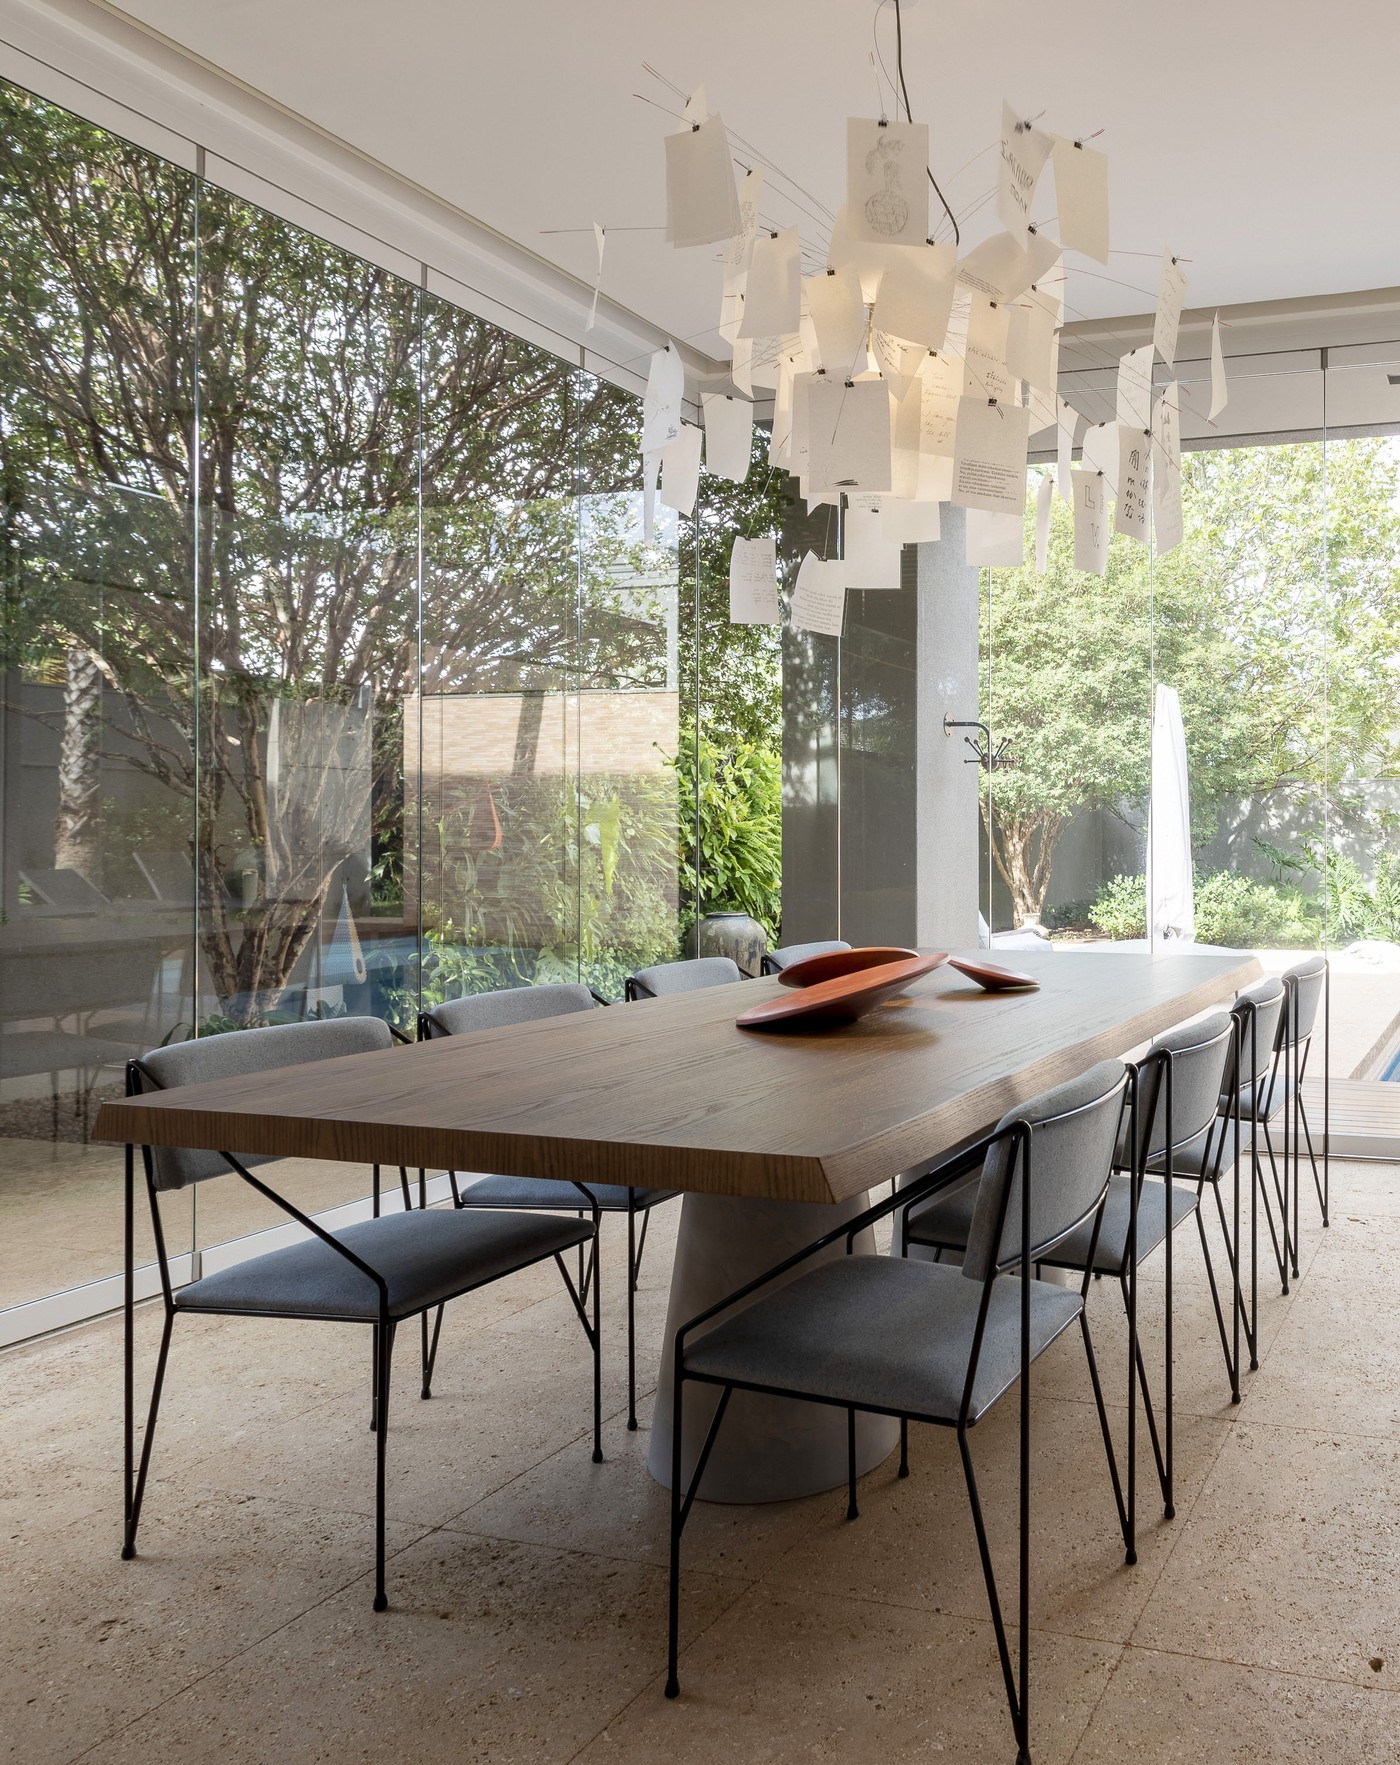 Décor do dia: sala de jantar com lustre escultural e conexão com a área externa (Foto: Ligia Cordeiro )